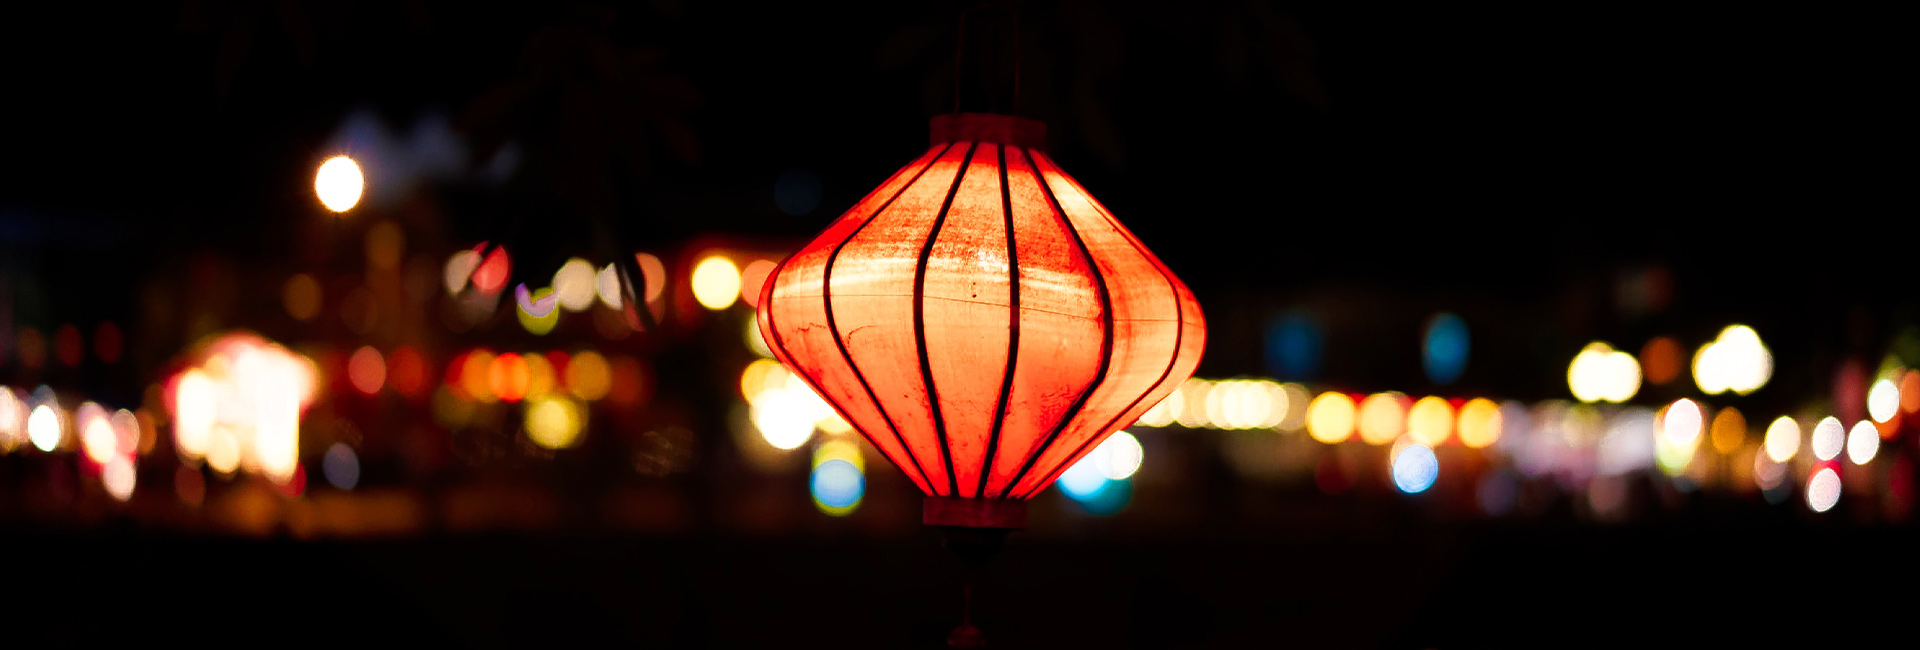 chinese-lantern-night-time